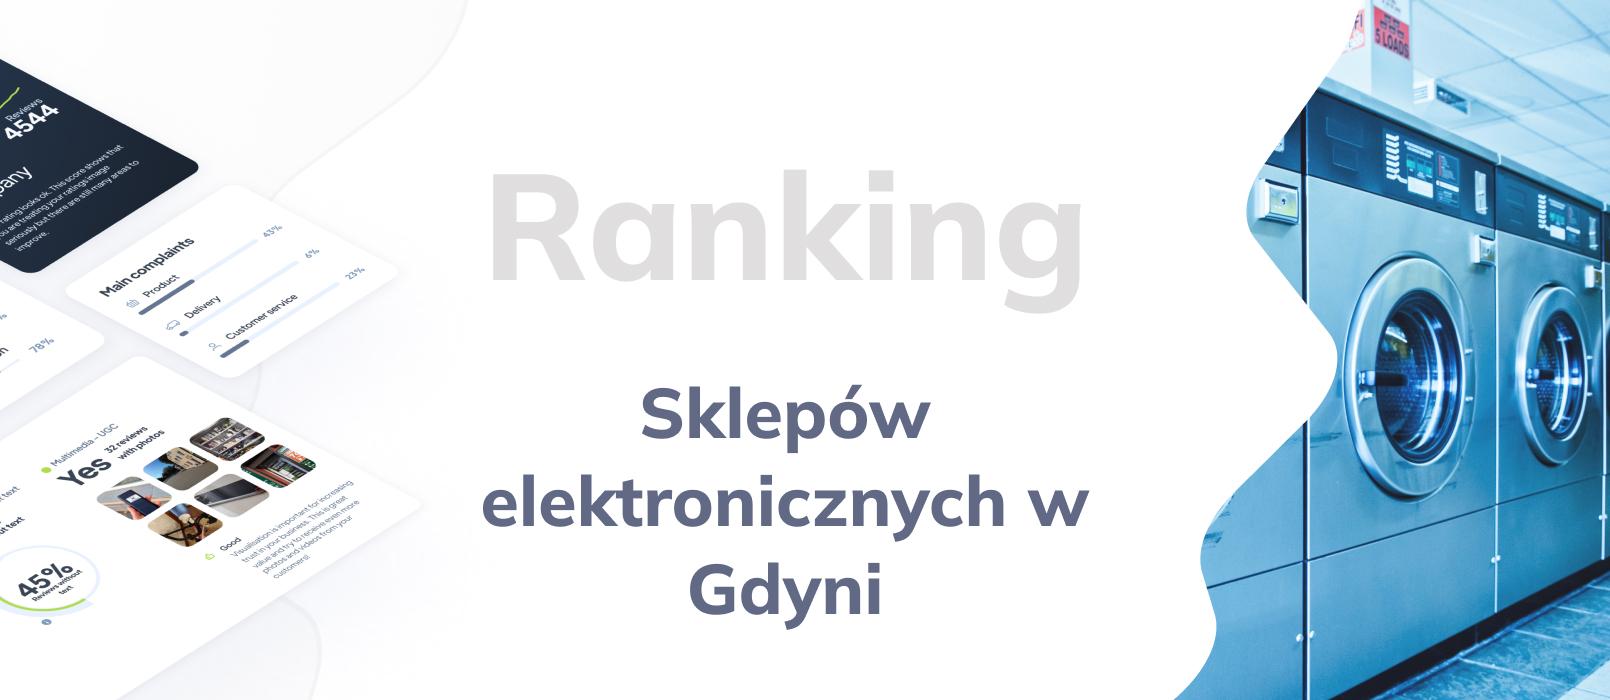 Sklepy elektroniczne w Gdyni - ranking TOP 10